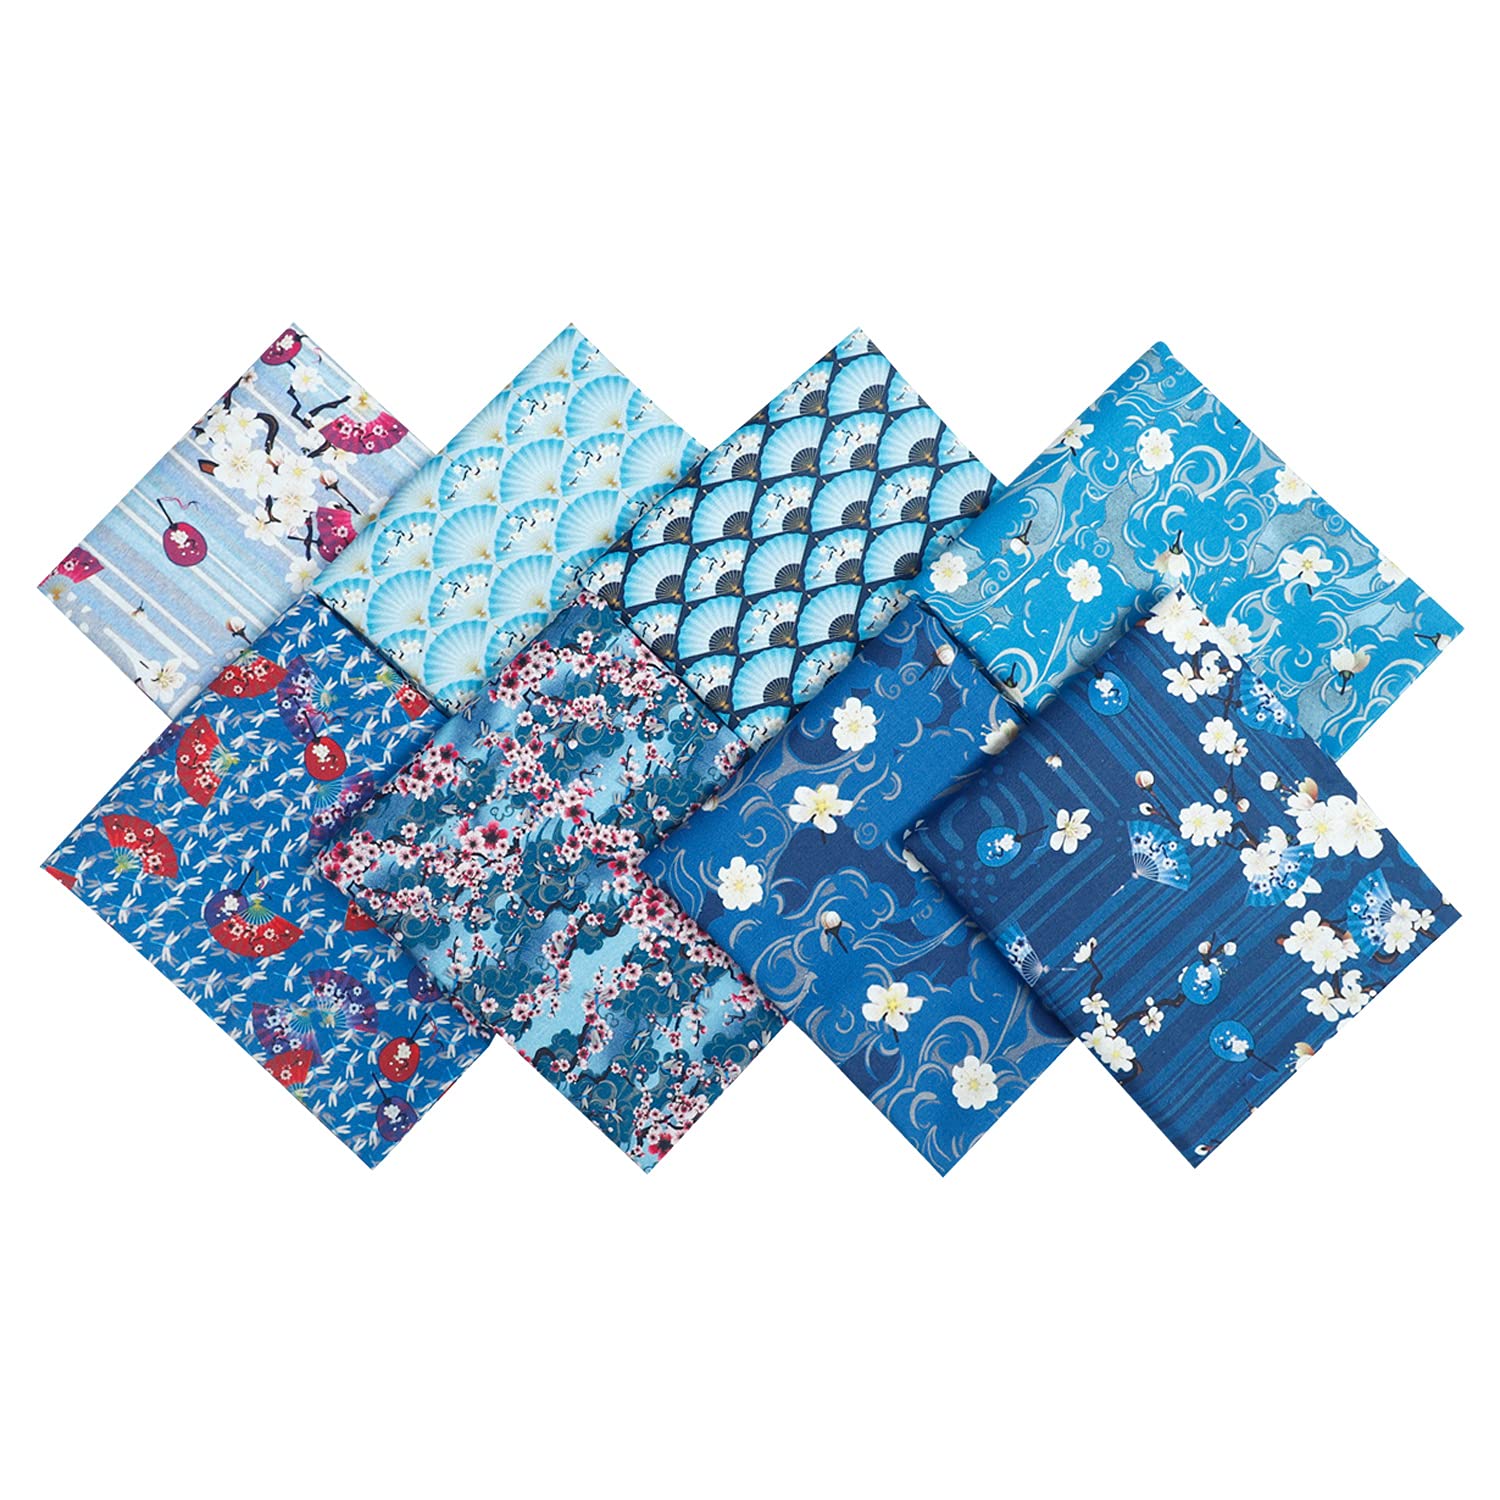 18 x 22 Fat Quarters Quilting Cotton Fabric Bundles for Sewing, 8 PCS  Blue Floral